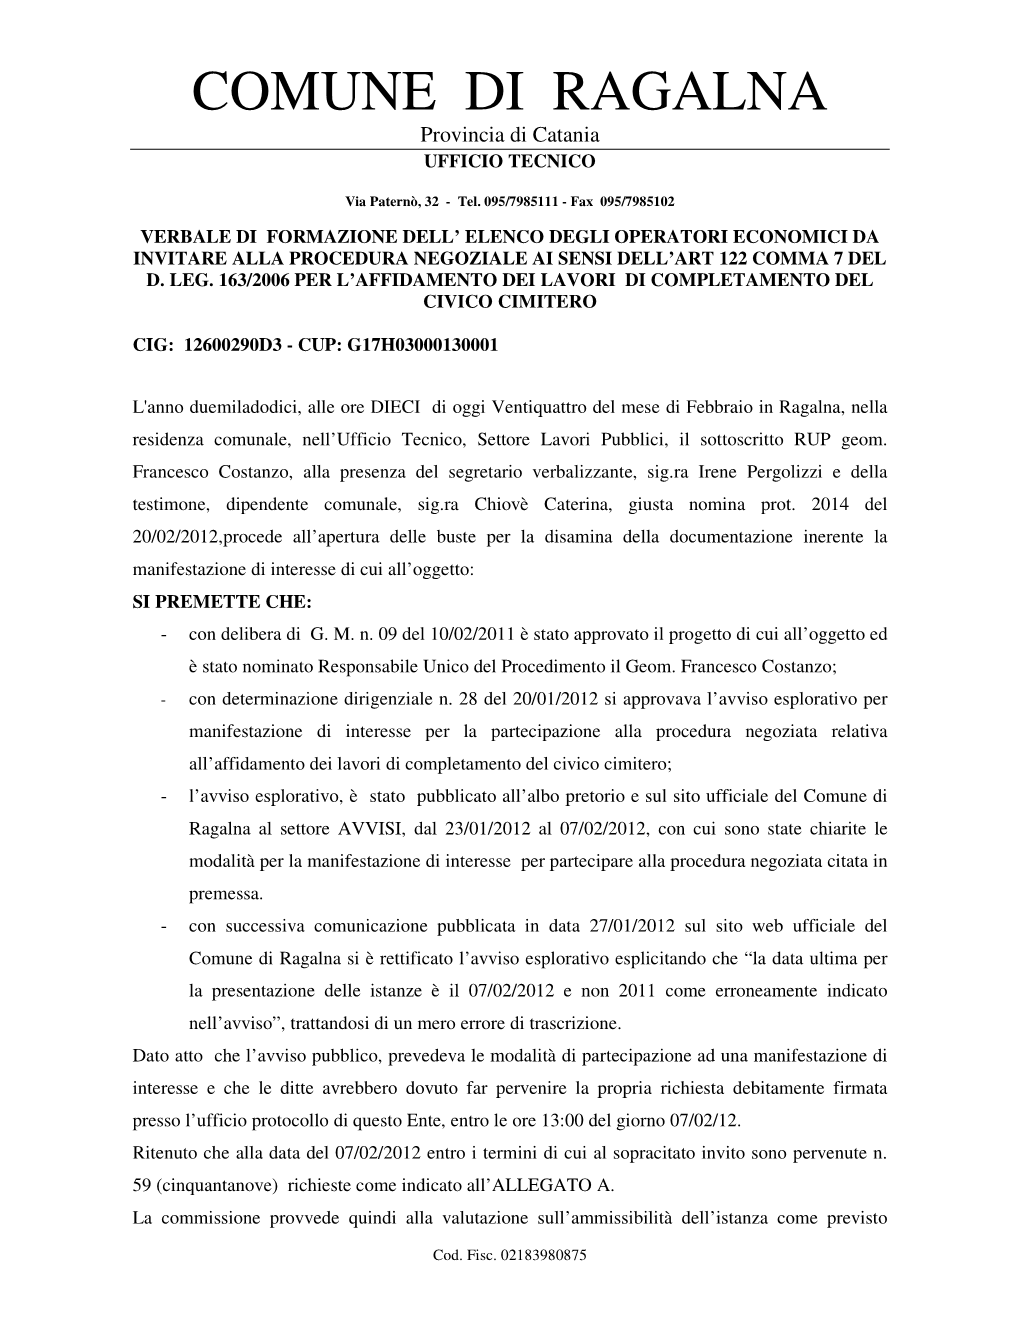 COMUNE DI RAGALNA Provincia Di Catania UFFICIO TECNICO